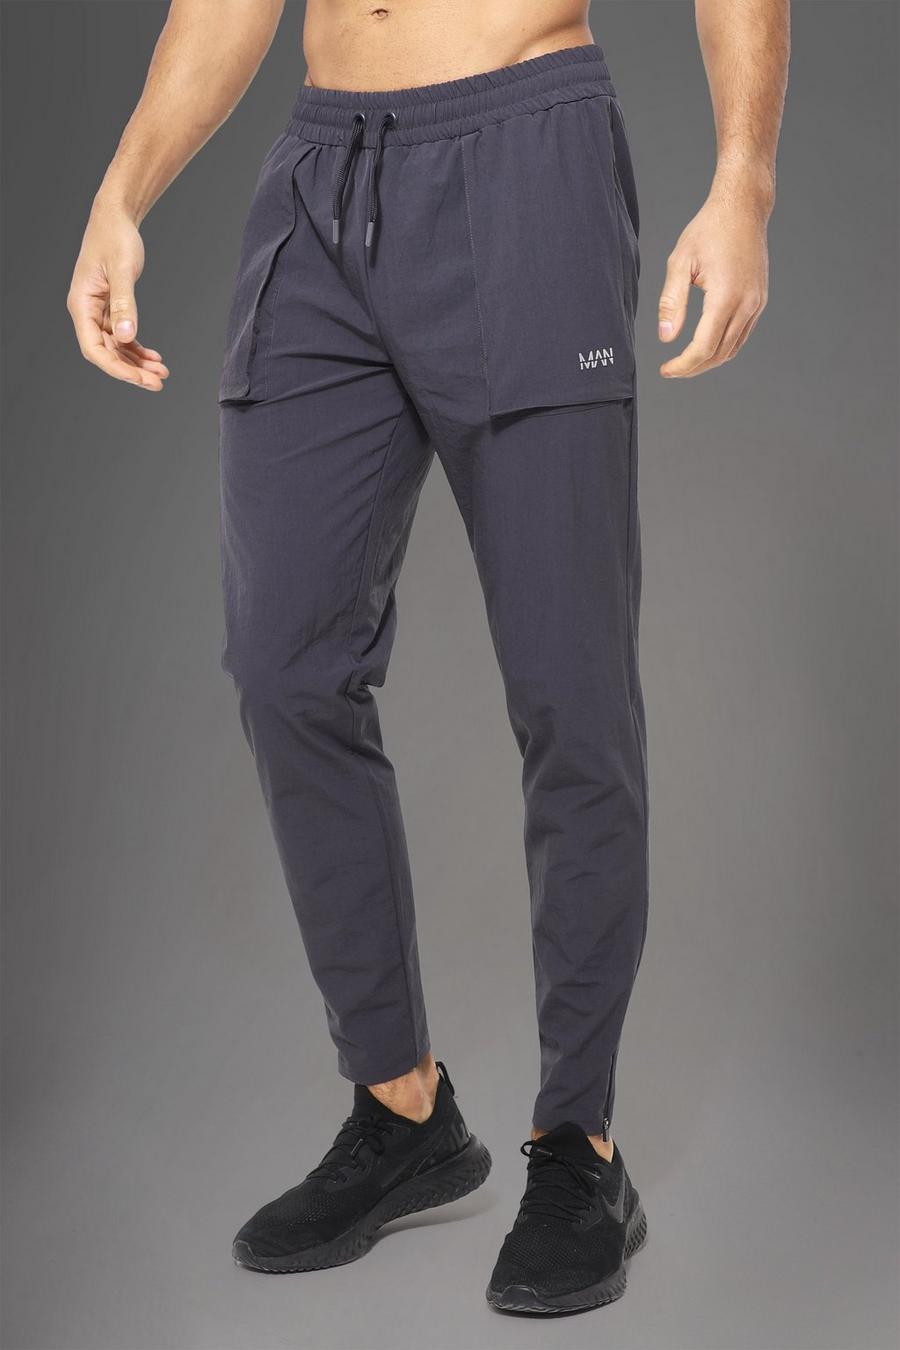 Pantaloni tuta Man Active Gym in nylon con tasche grandi squadrate, Charcoal gris